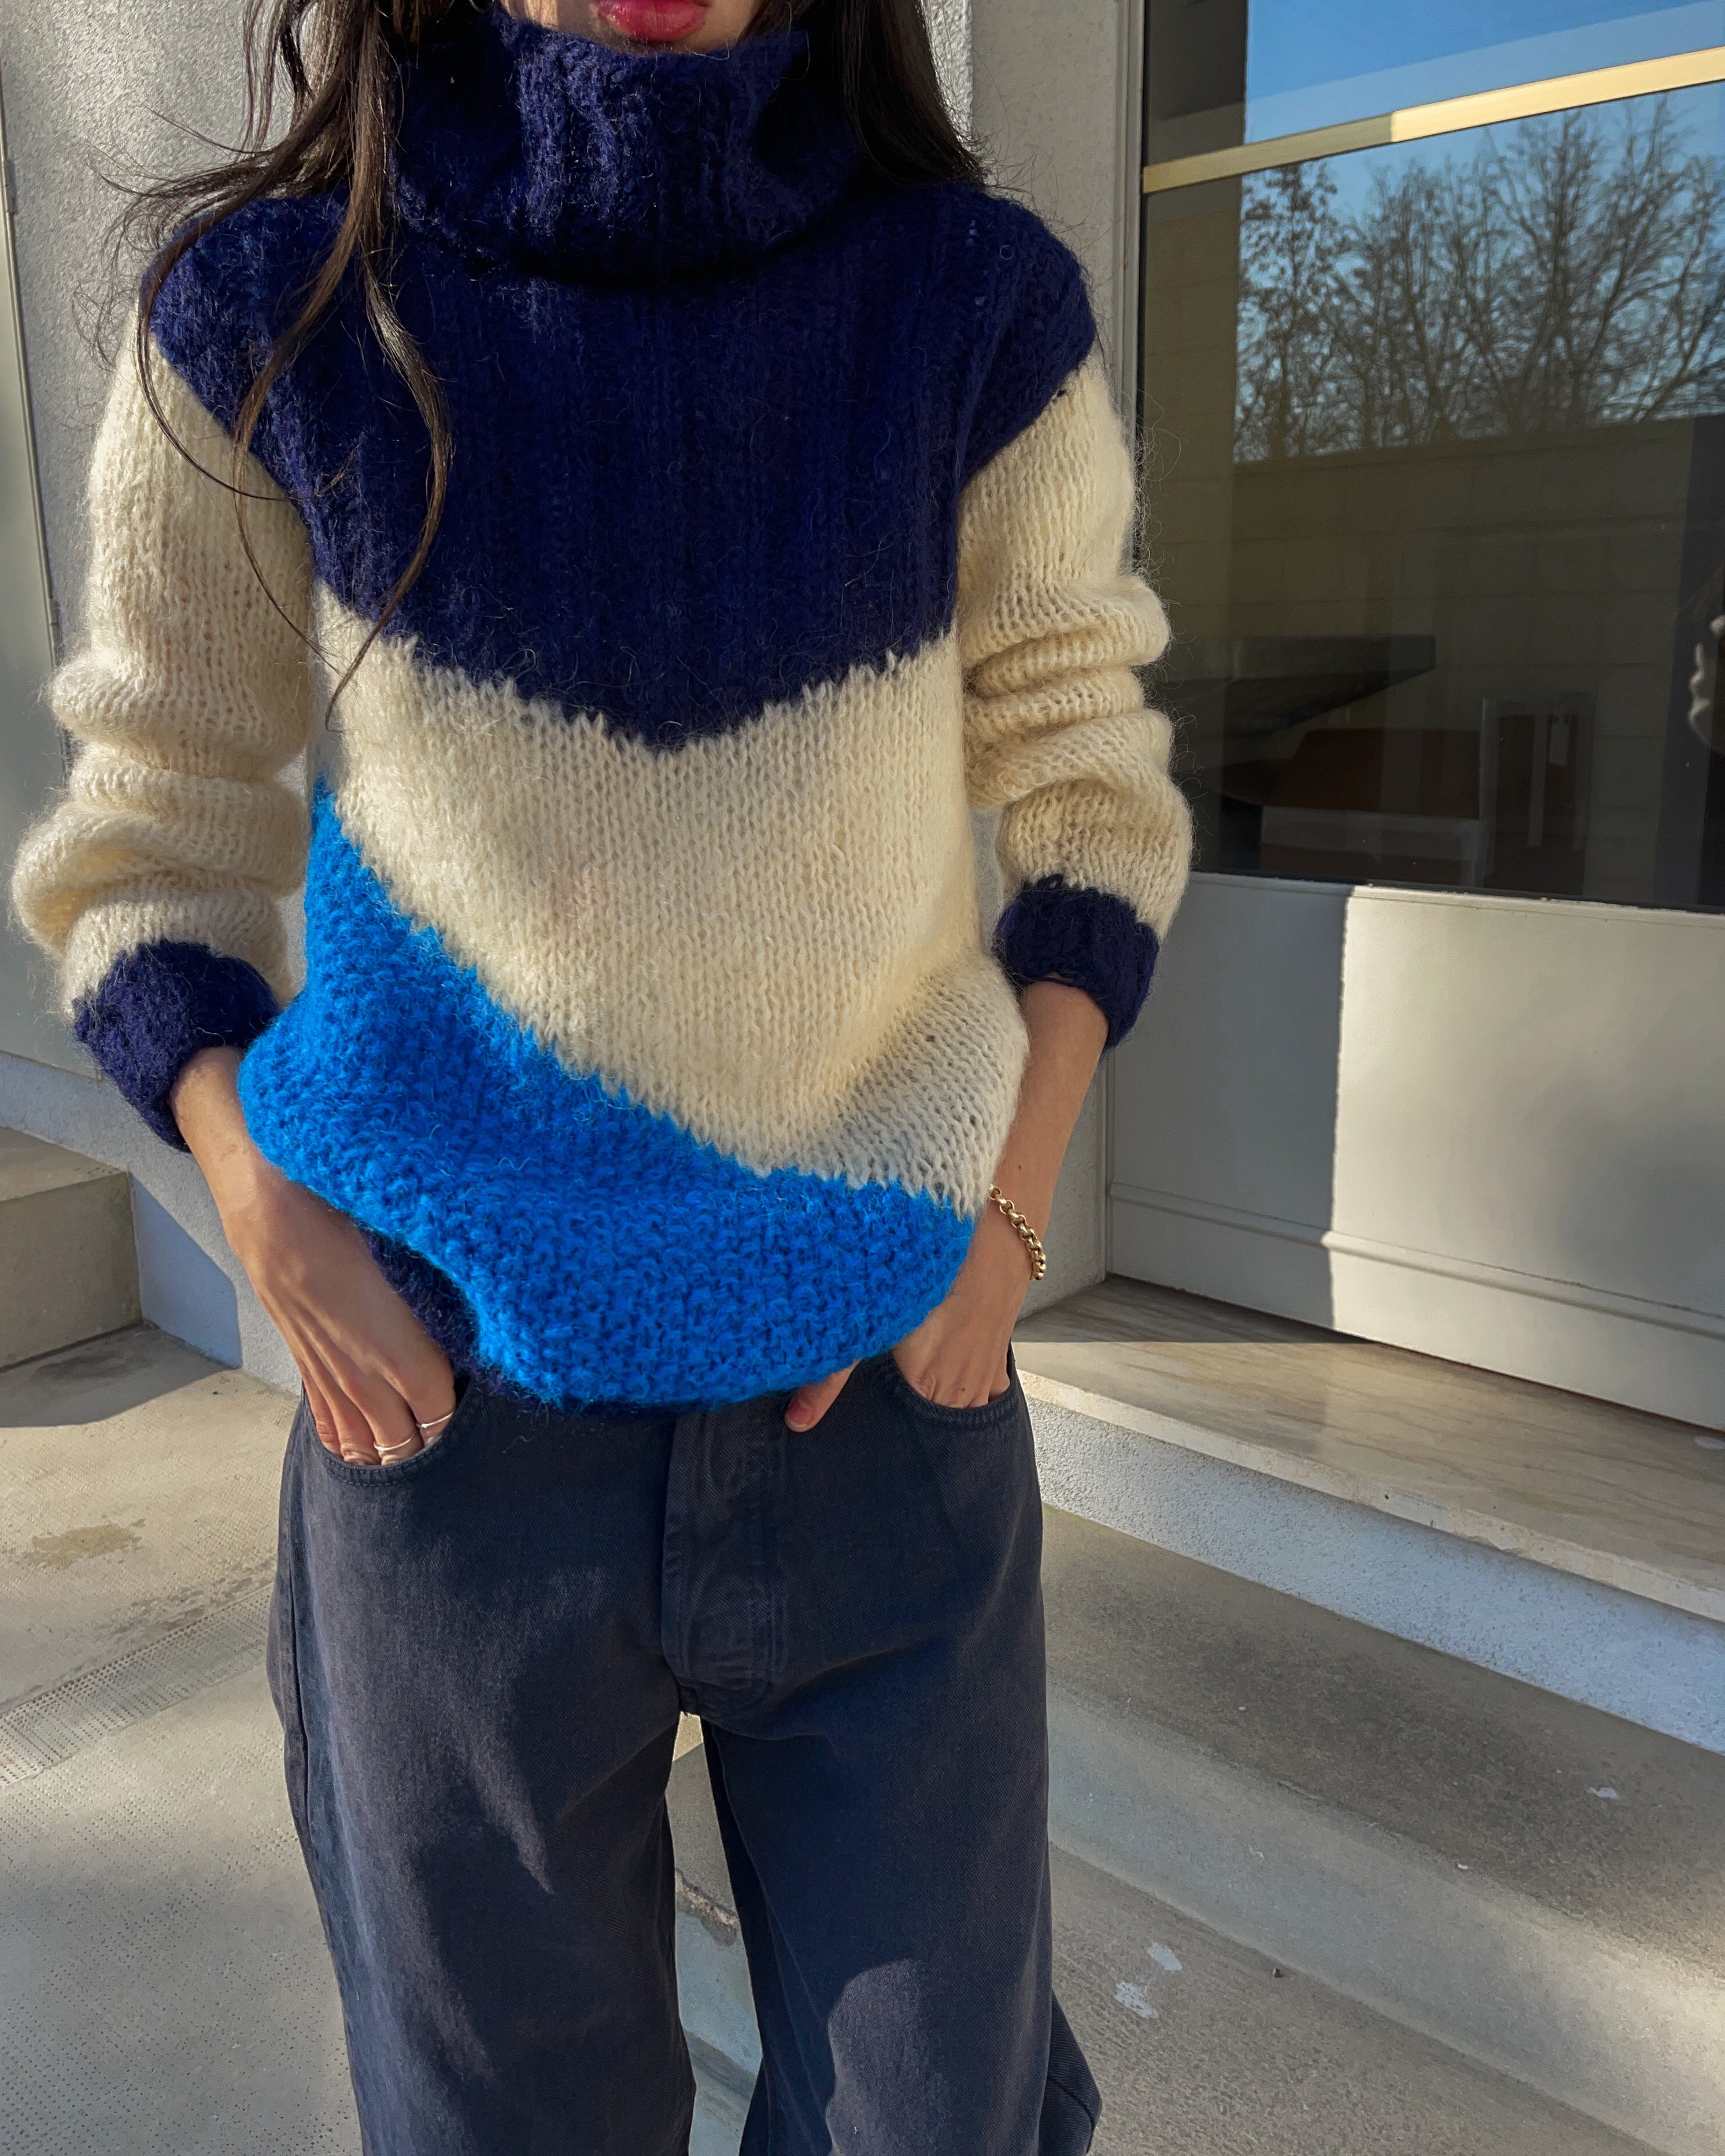 Mohair BLUE wool jumper